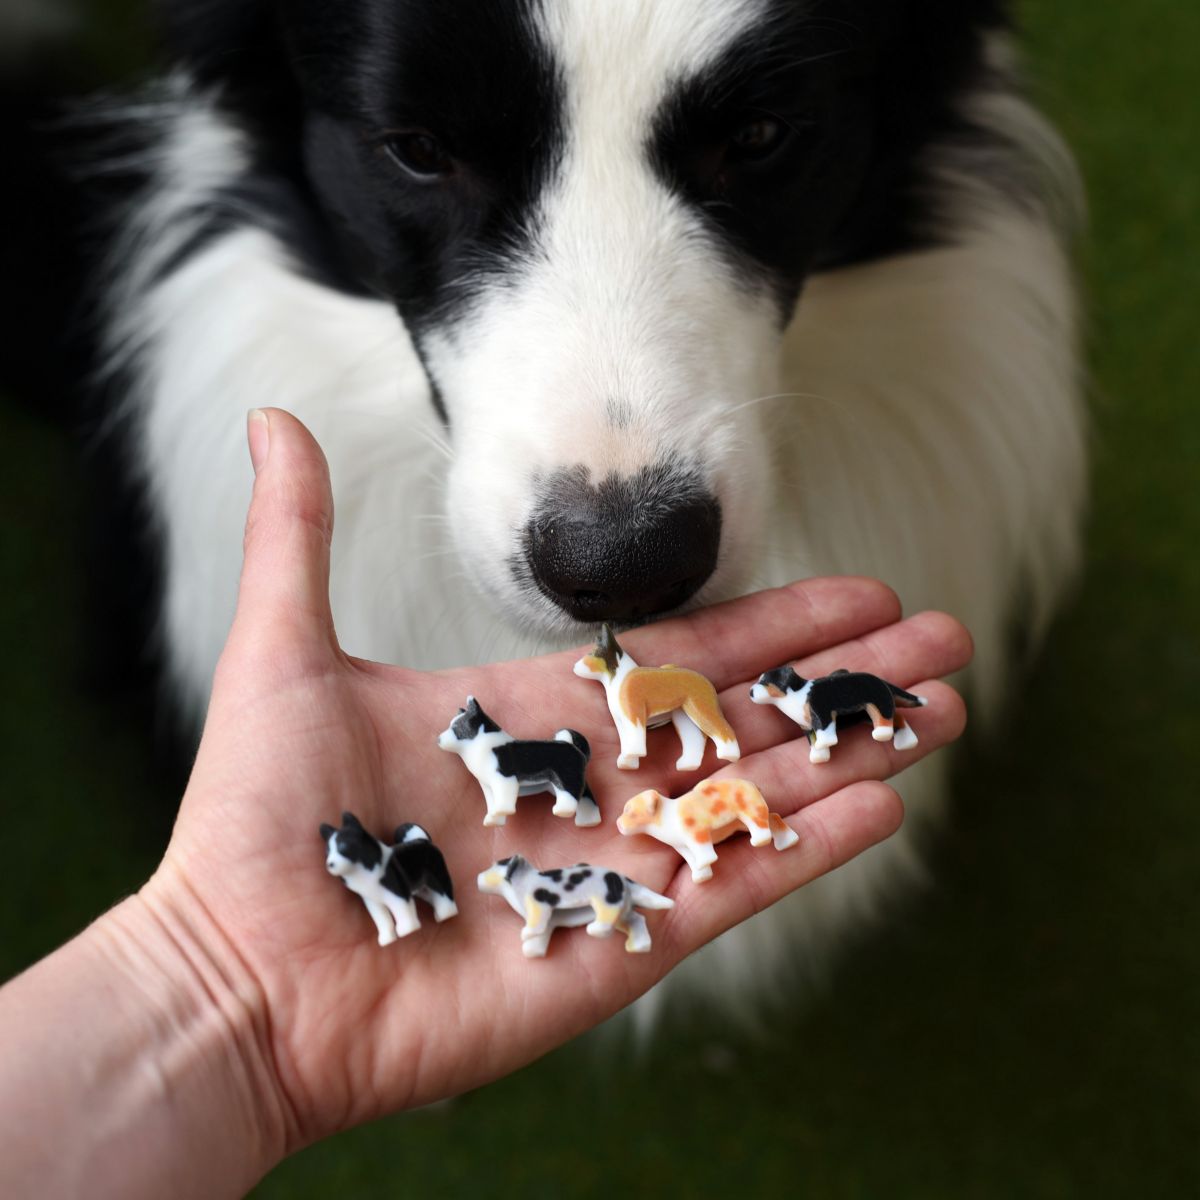 LEGO formatervezés formatervező mérnök szavazás lego figura magyar kutyafajta mudi pumi Border collie 